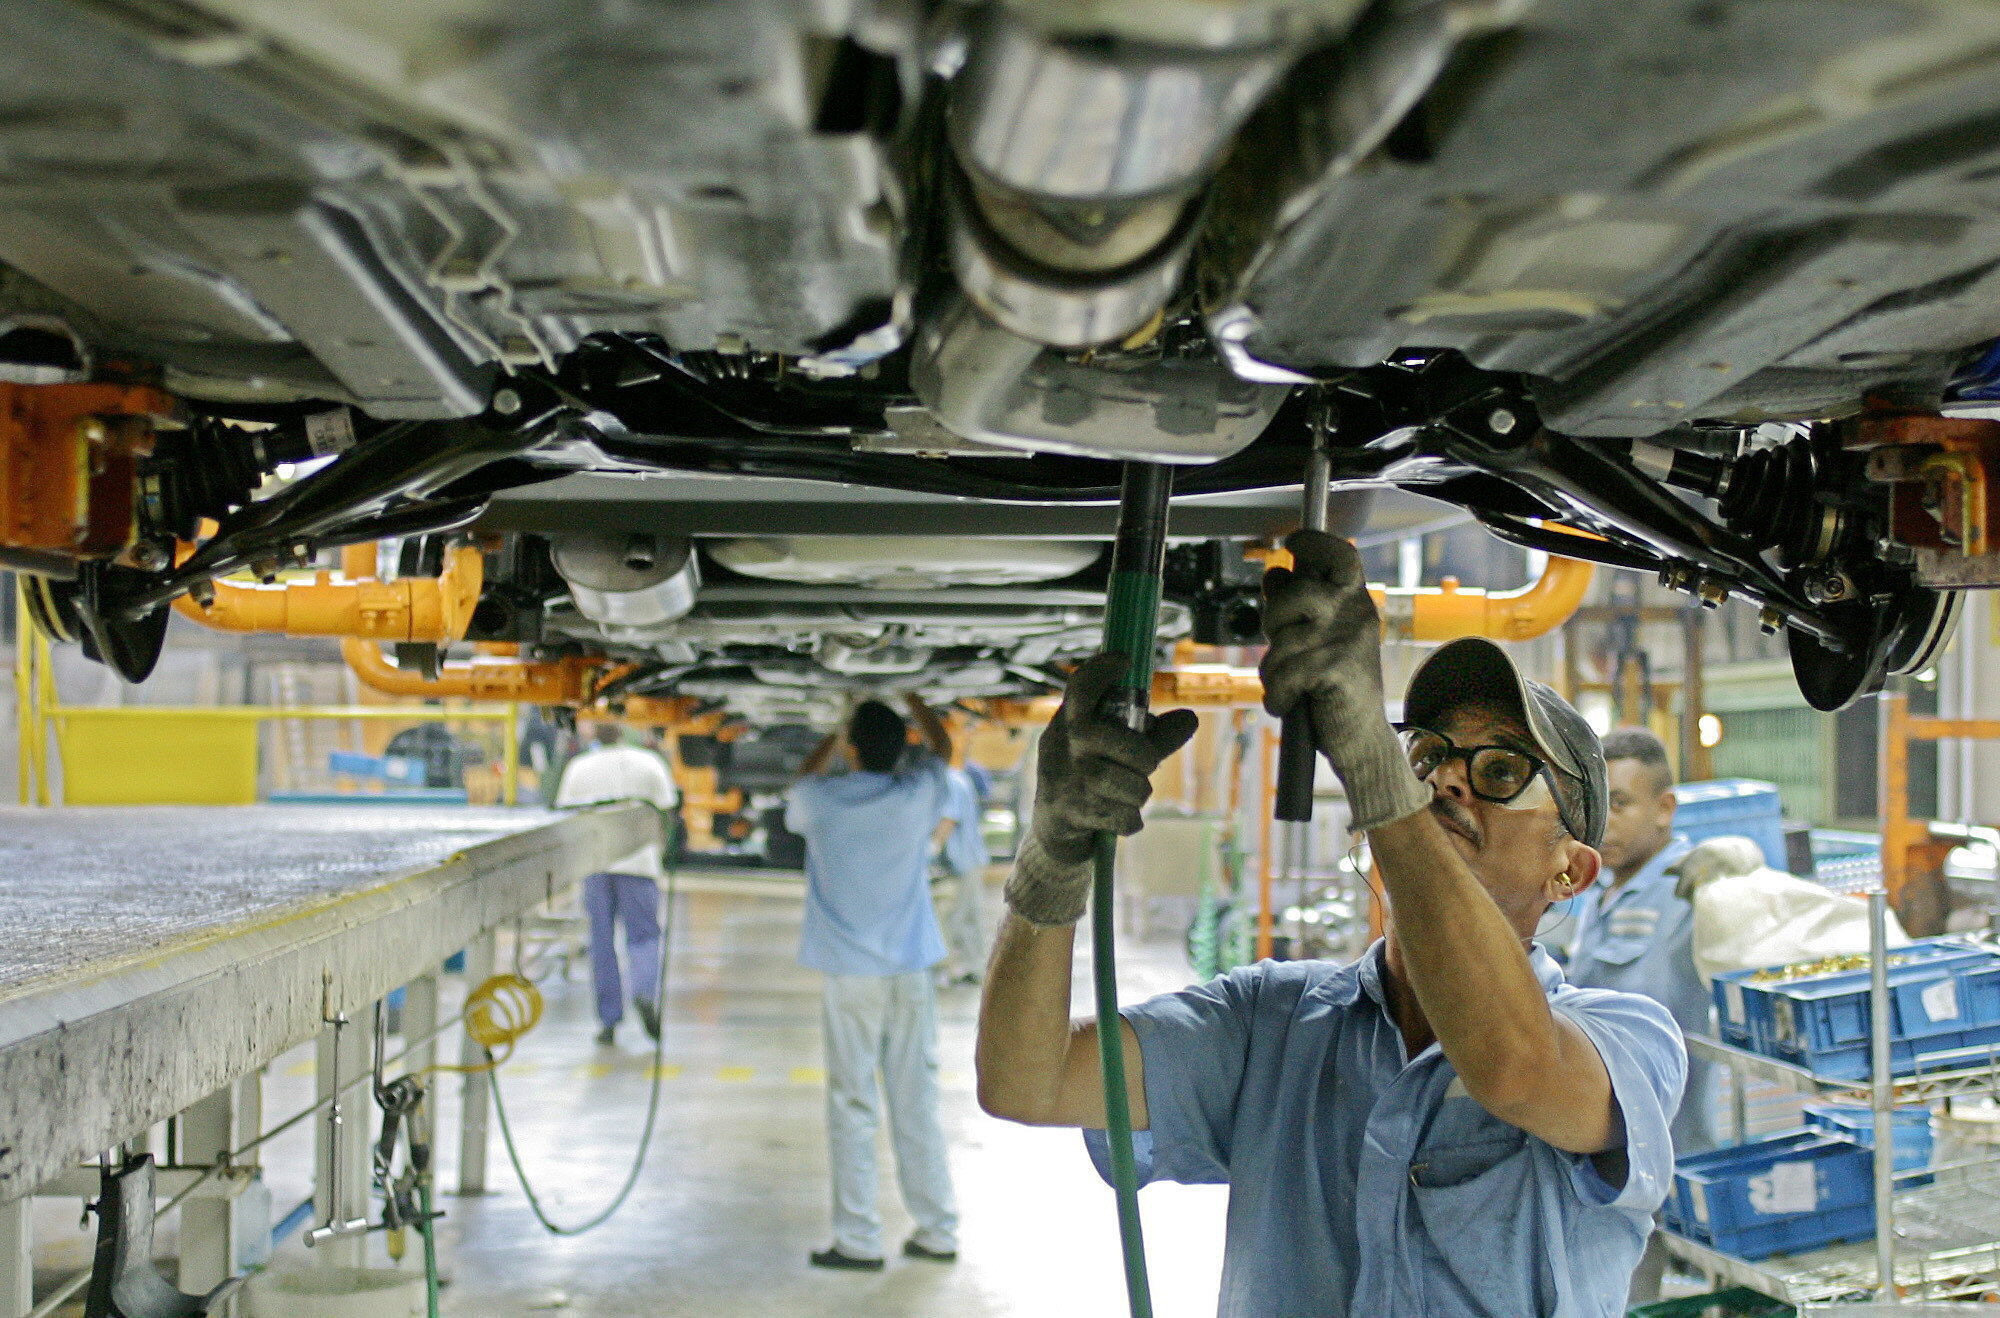 Las automotrices aportaron el 39% de las exportaciones industriales del país y generan empleo formal
EFE/Caetano Barreira